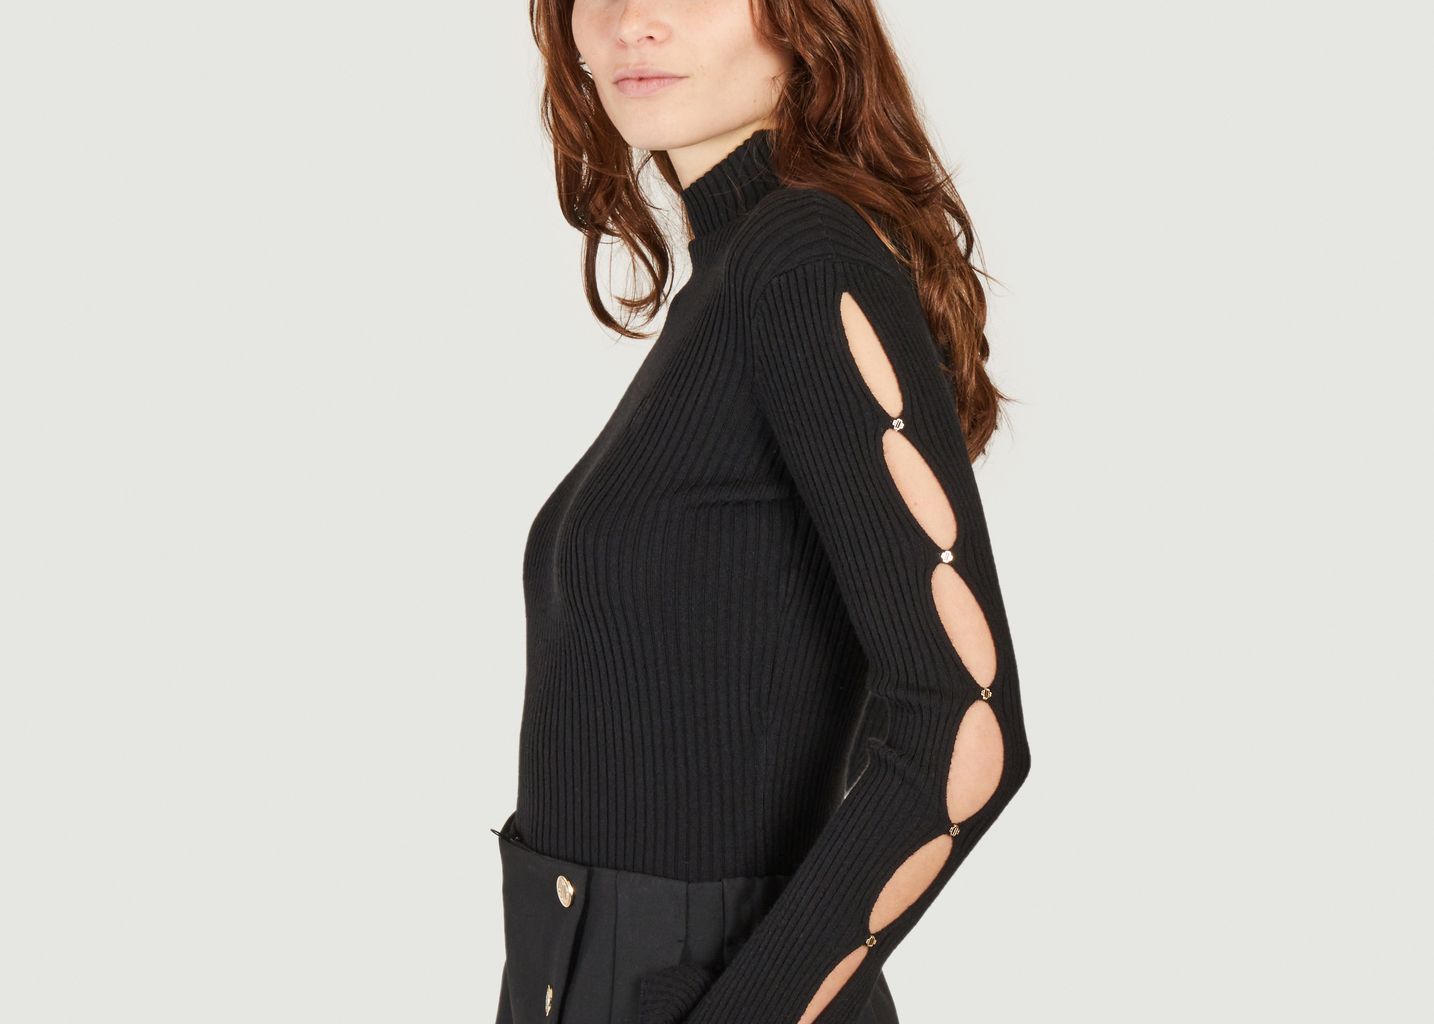 Modo slim-fitting openwork sweater - Maje